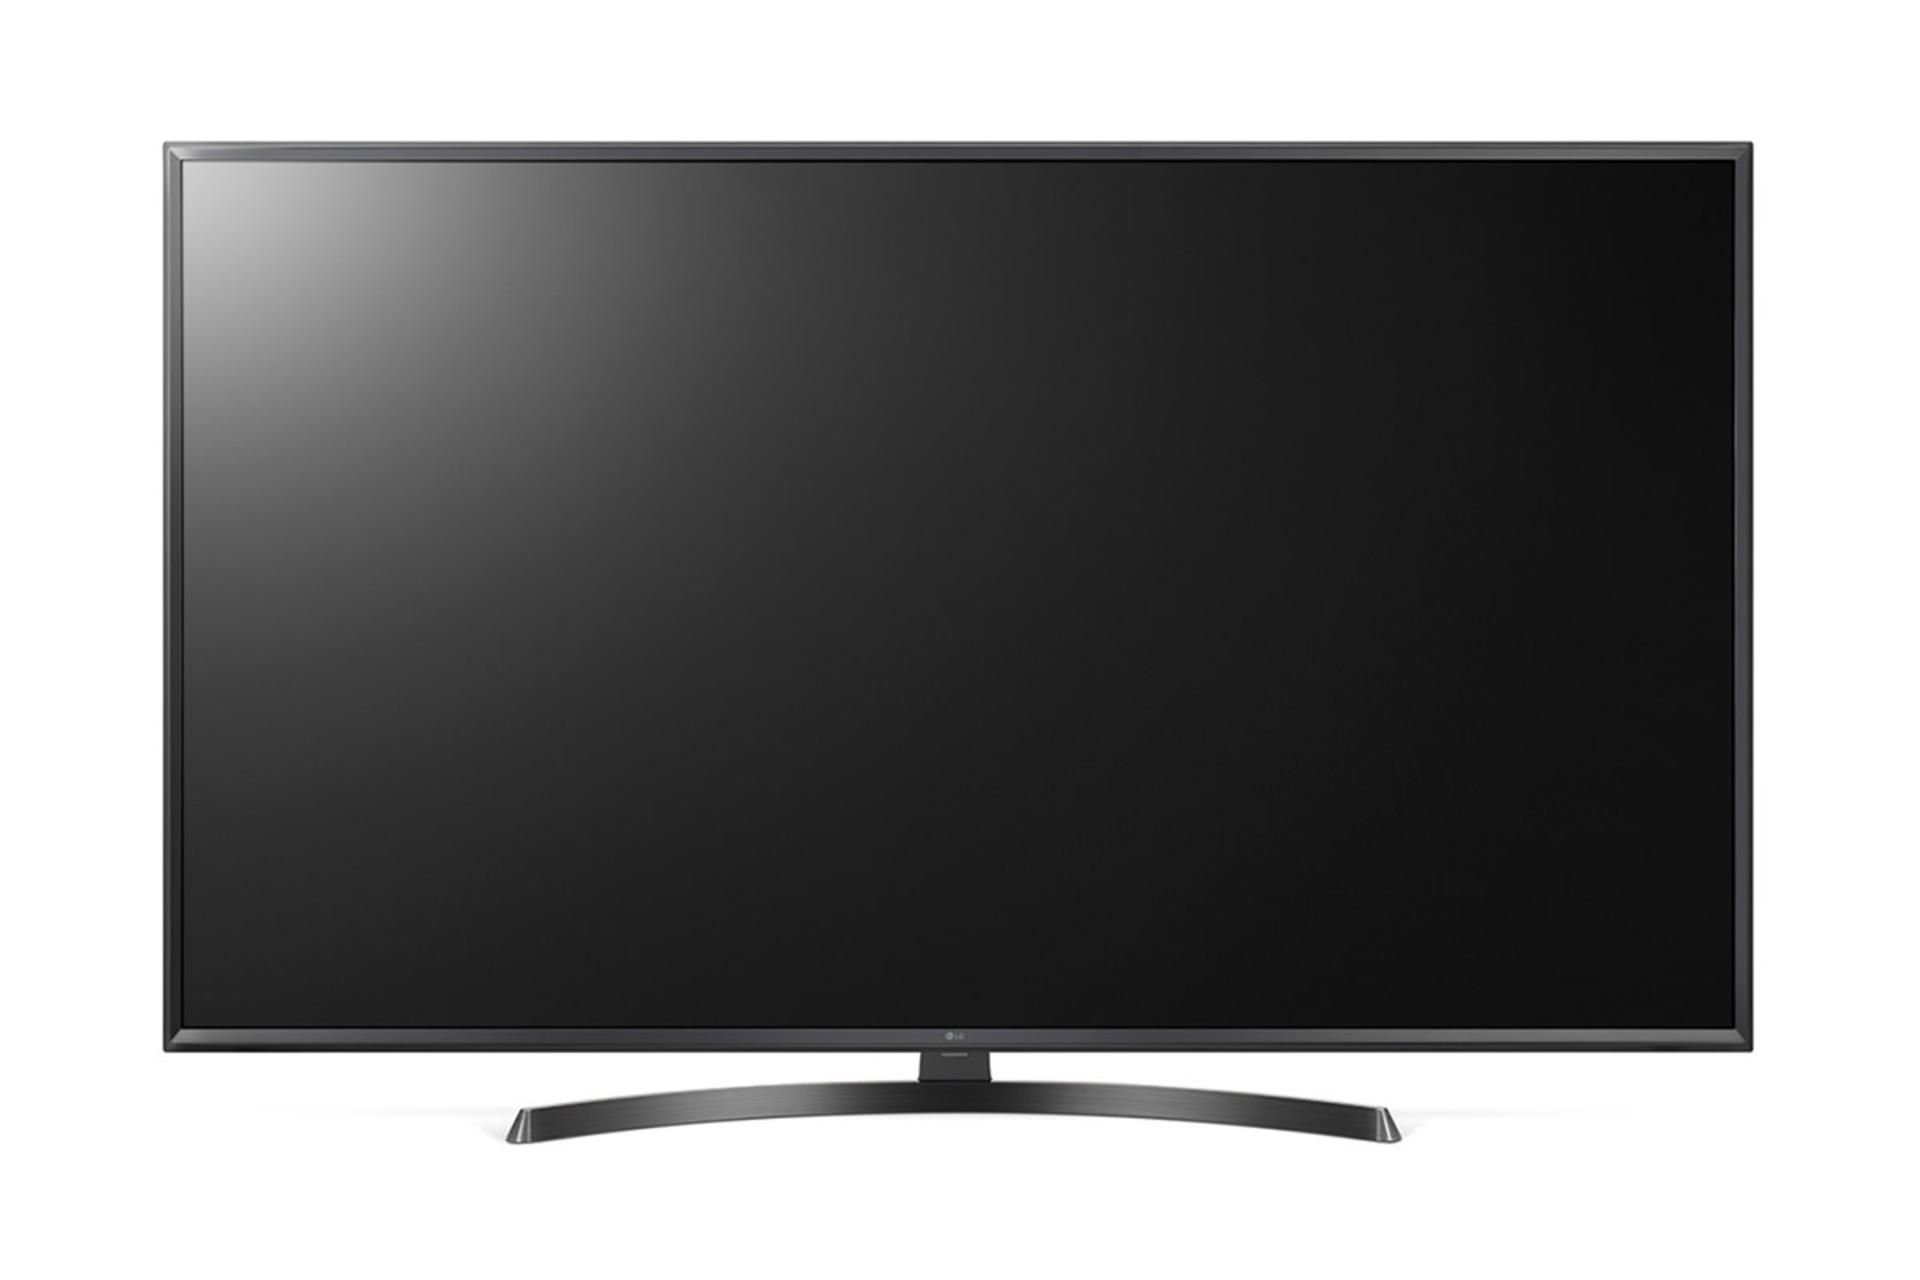 نمای جلو تلویزیون ال جی UK6600 مدل 43 اینچ با صفحه خاموش و رنگ مشکی و پایه U شکل